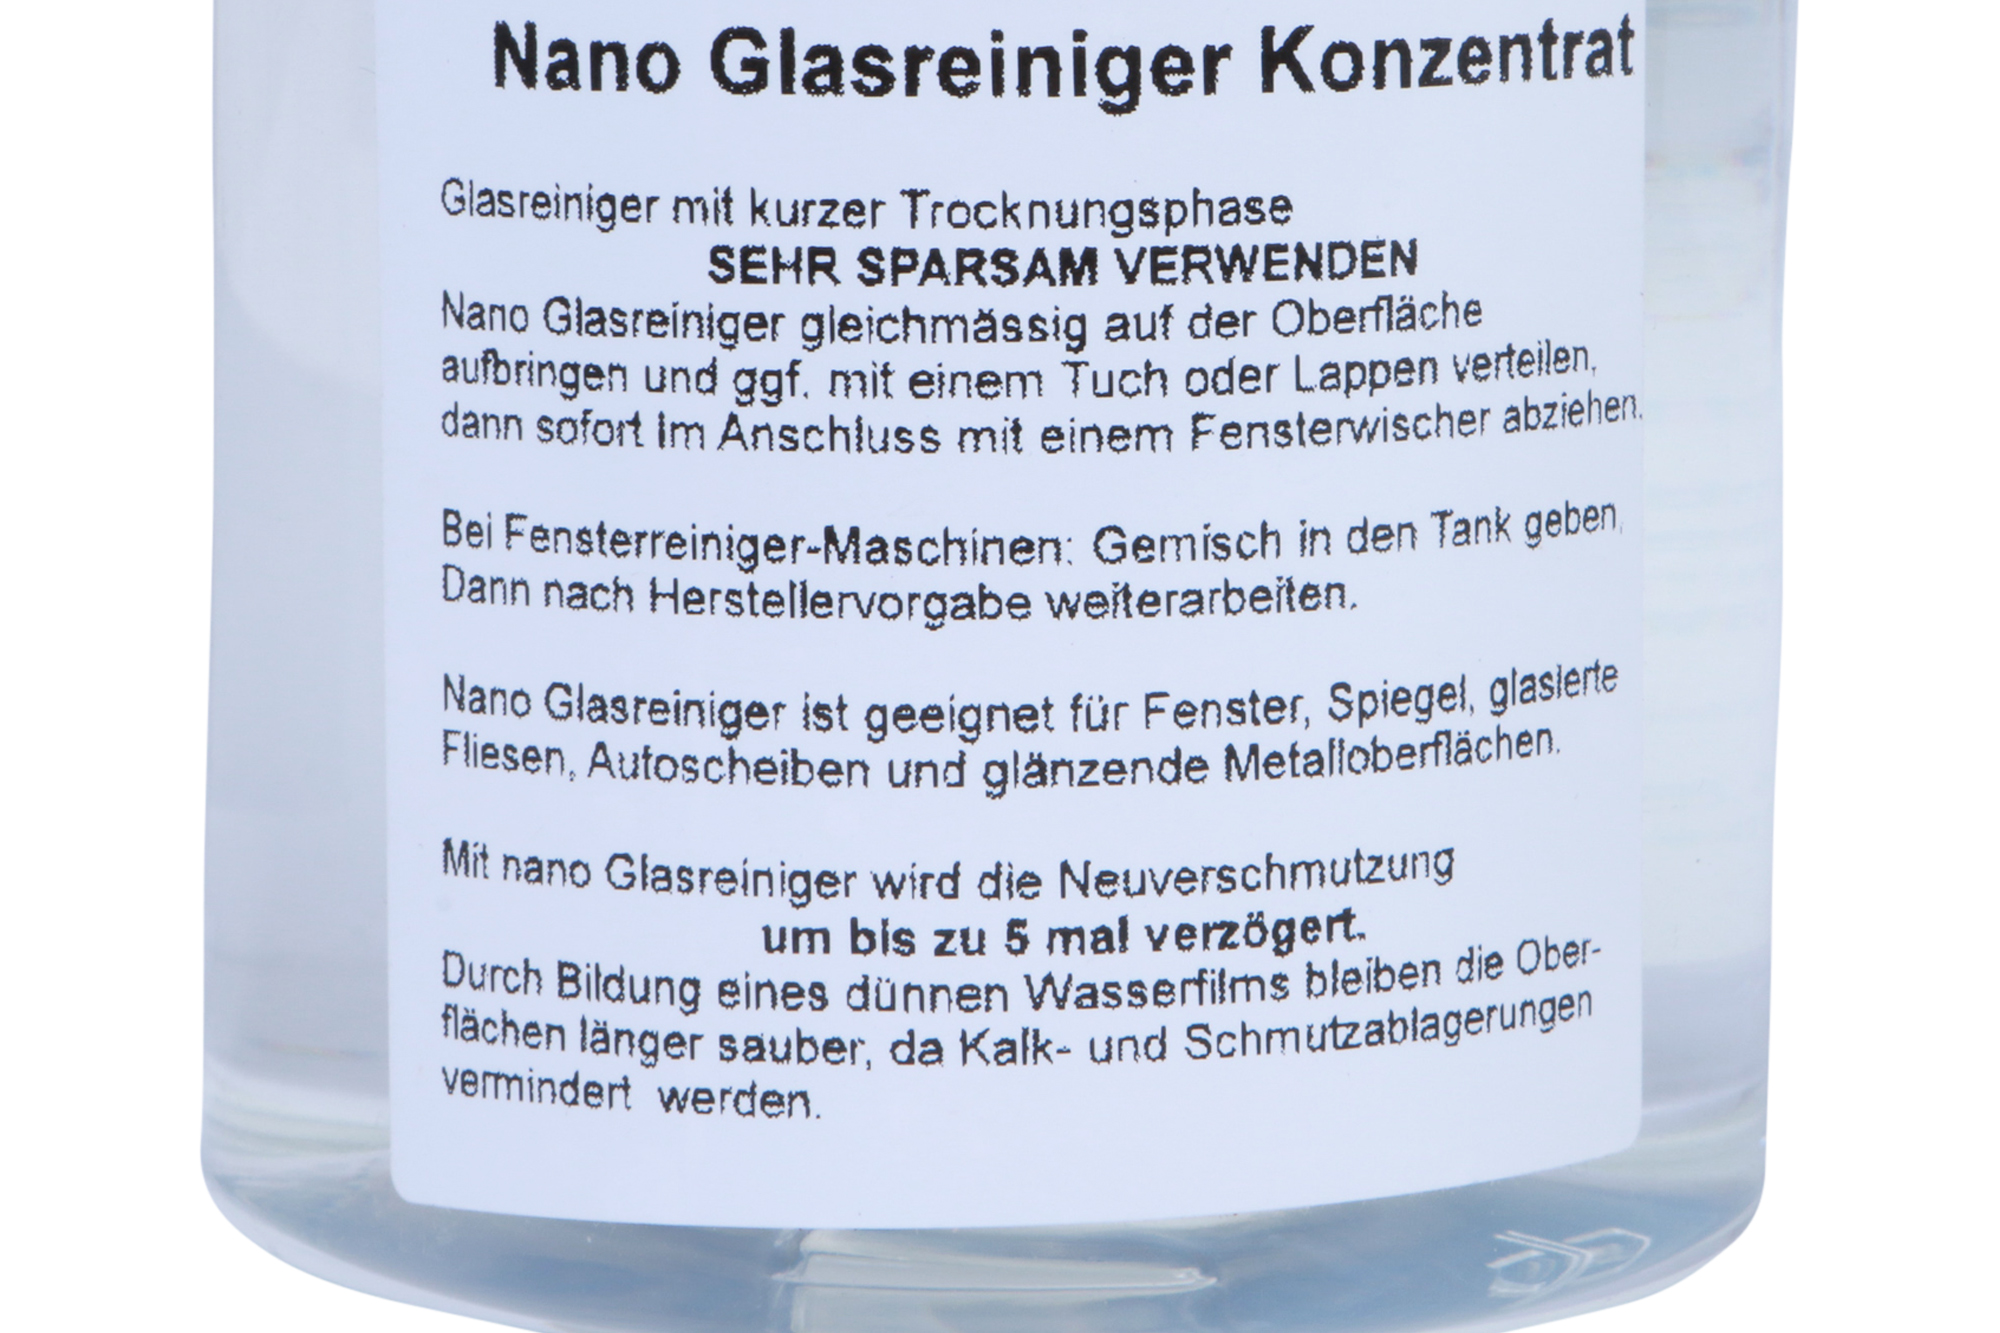 STAUBSAUGERLADEN.DE Nano Glasreiniger Konzentrat Vorwerk Reinigungsmittel - 500ml für Fensterreiniger VG100